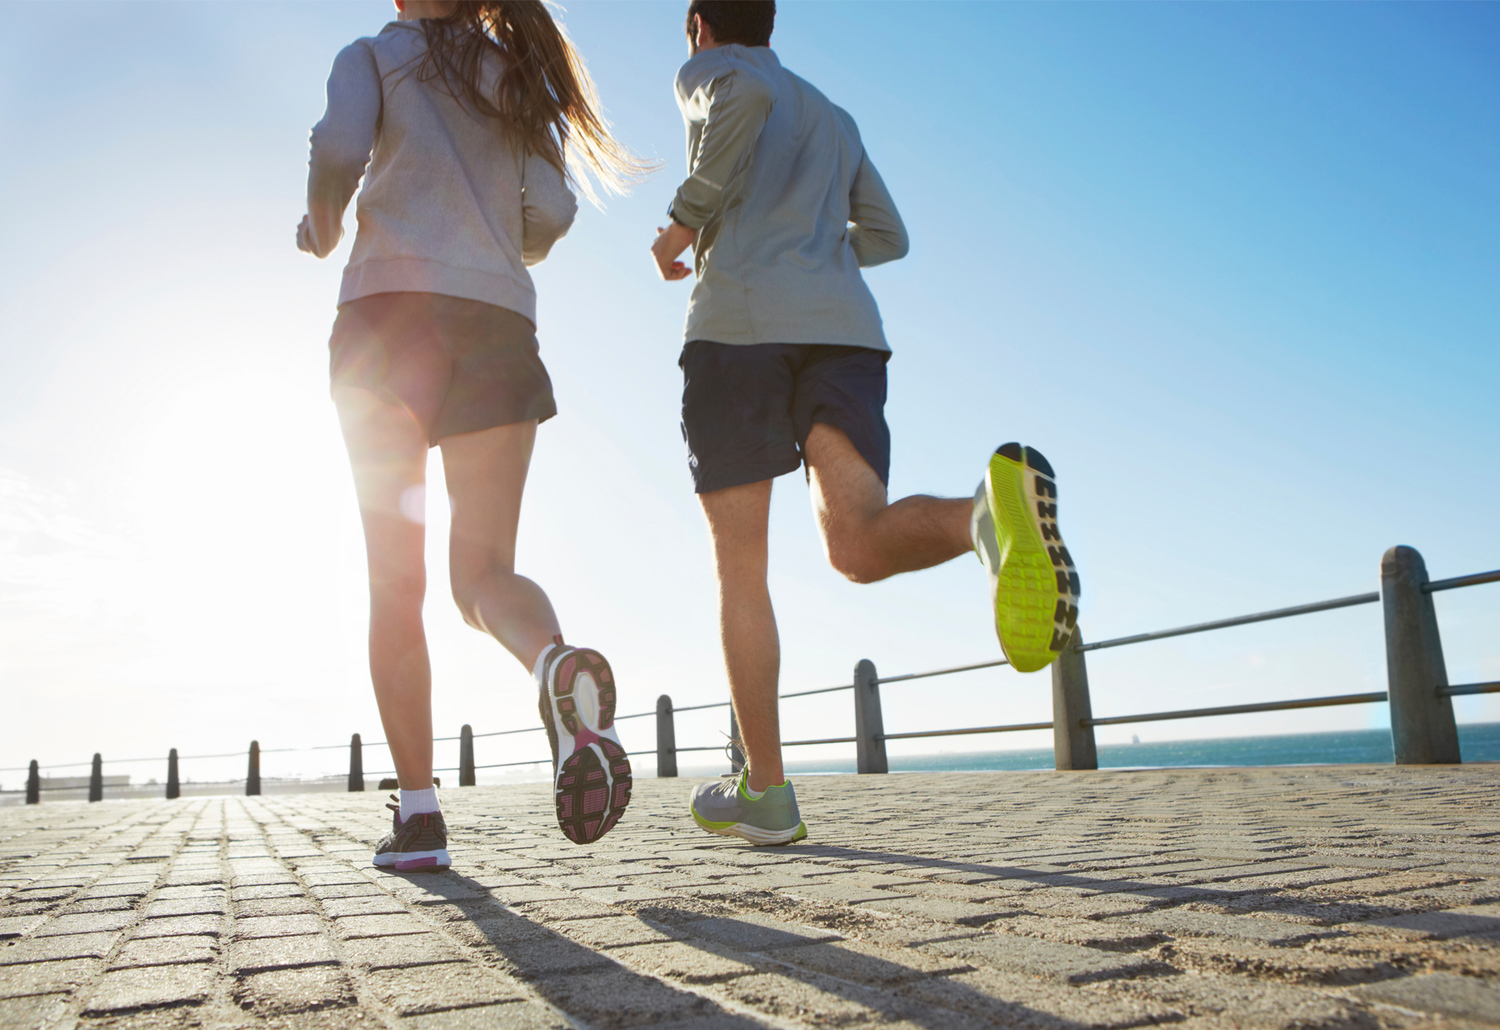 Correr alarga la vida: 7 horas de vida extra por cada hora que corras